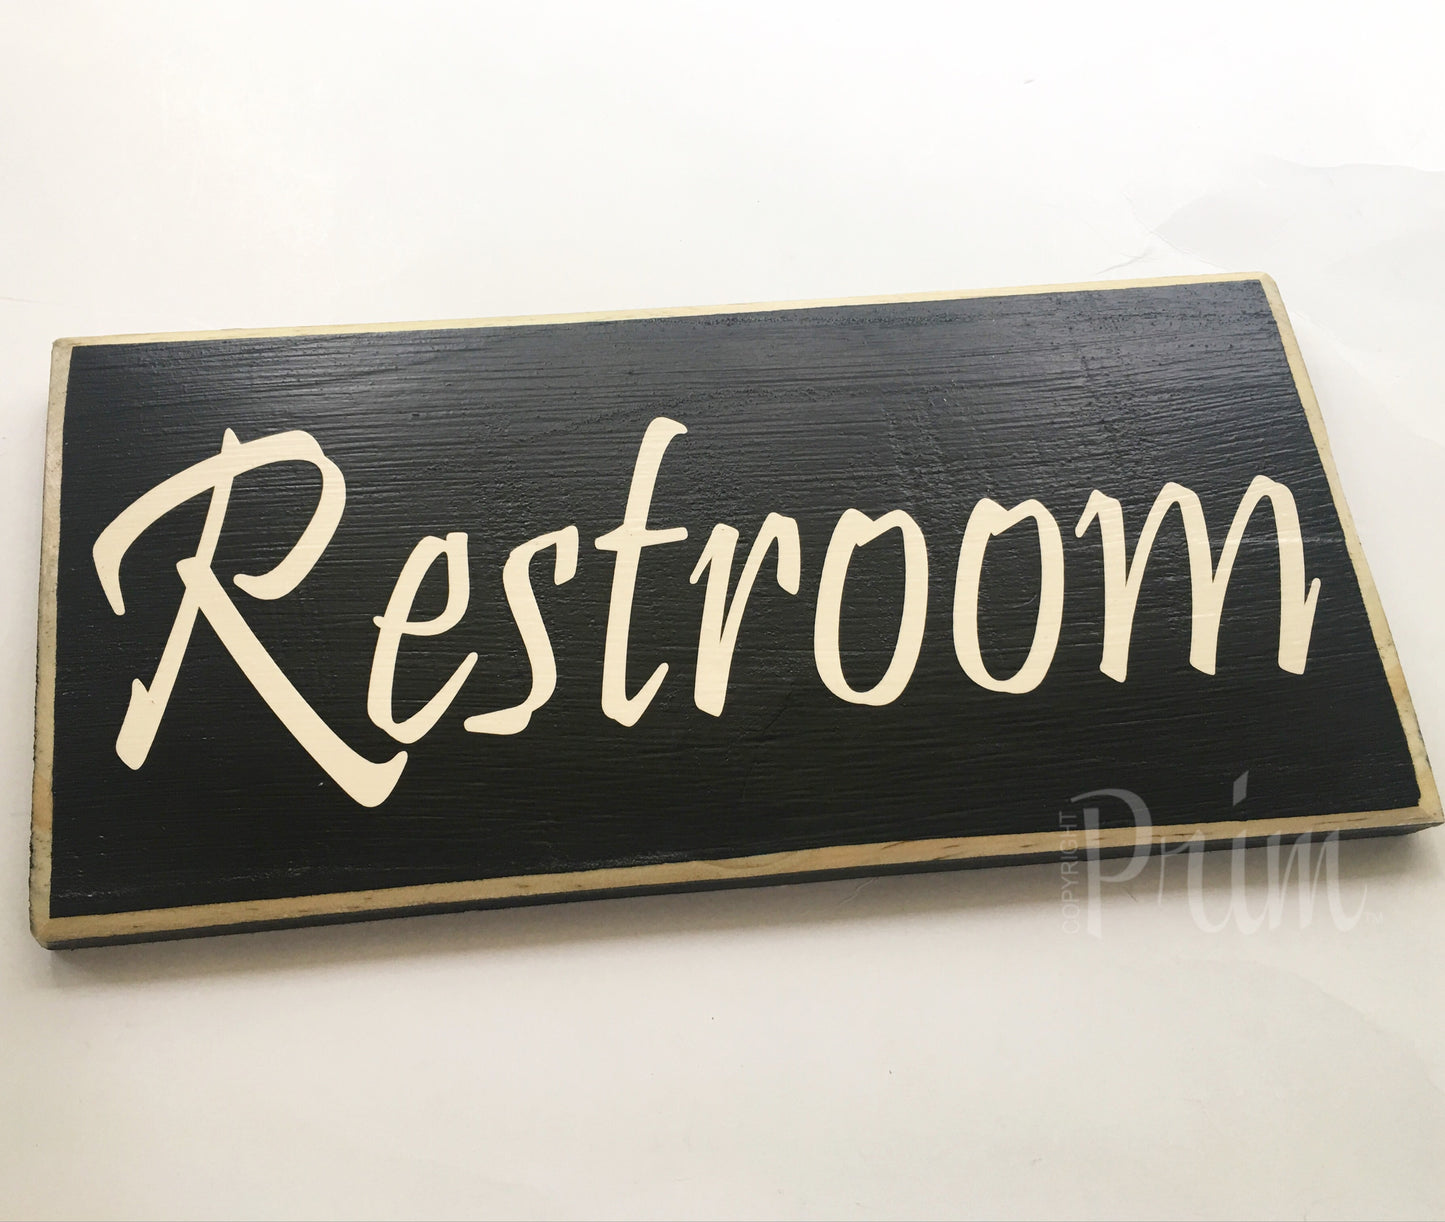 12x6 RESTROOM Wood Bathroom Sign